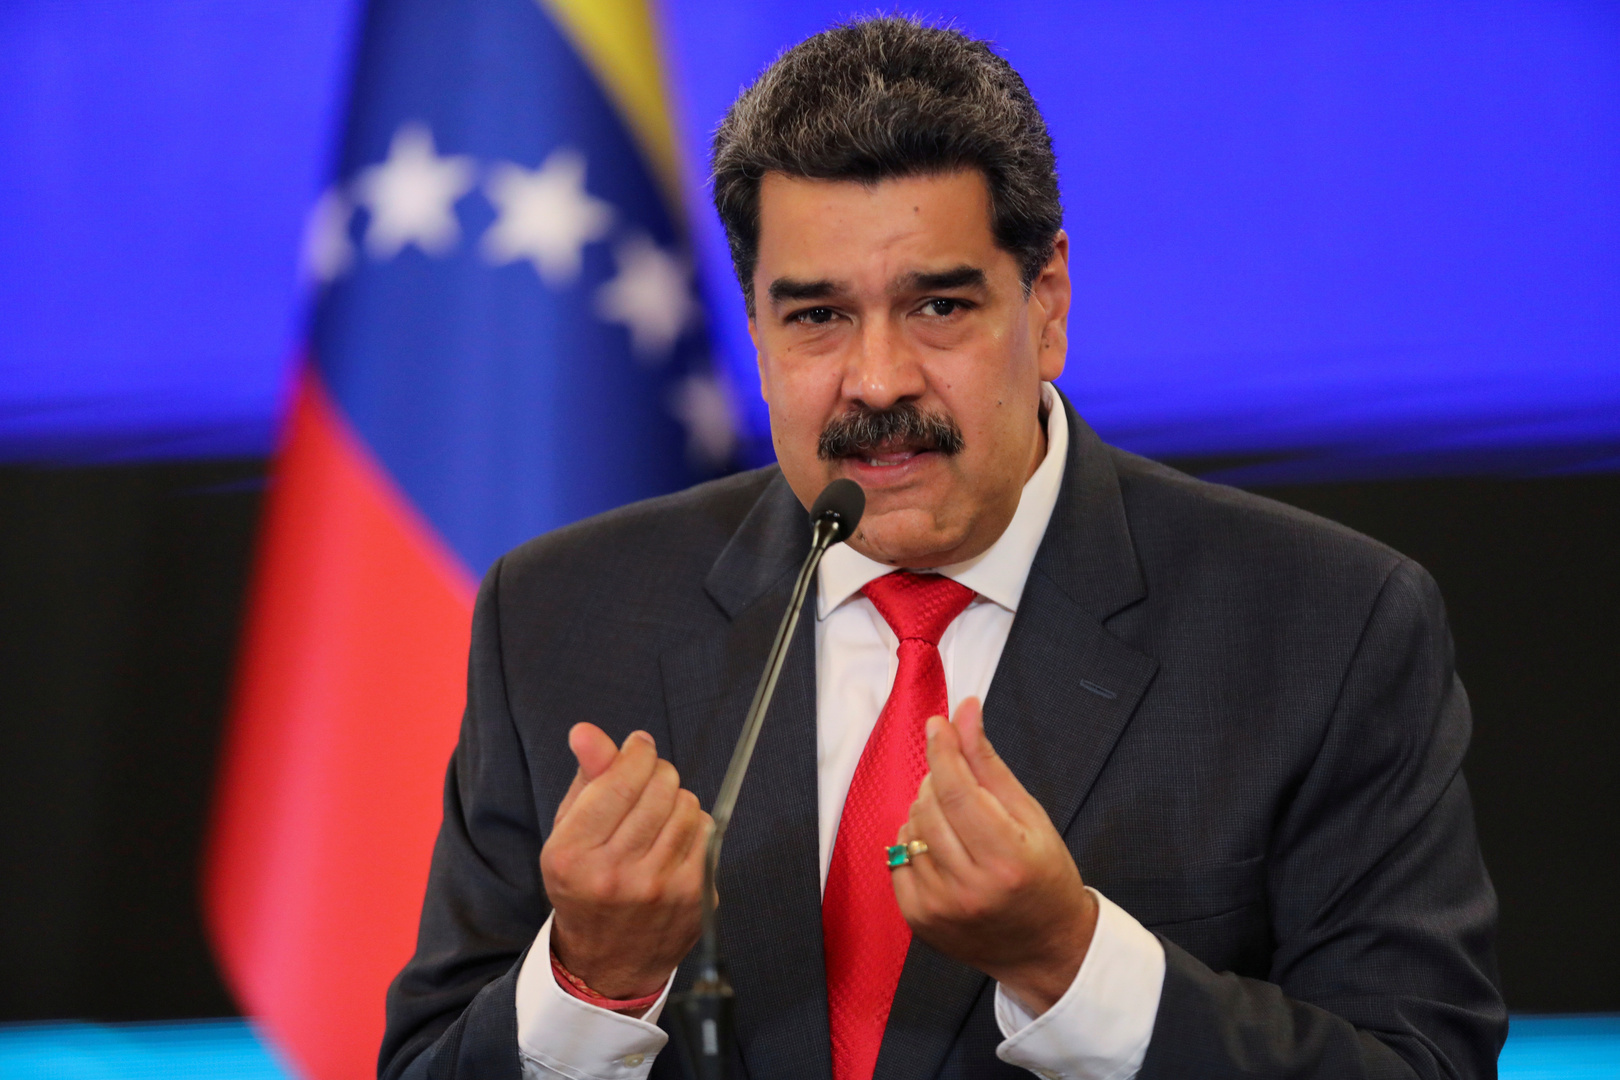 مادورو يقترح النفط مقابل لقاح كورونا لشعب فنزويلا (فيديو)